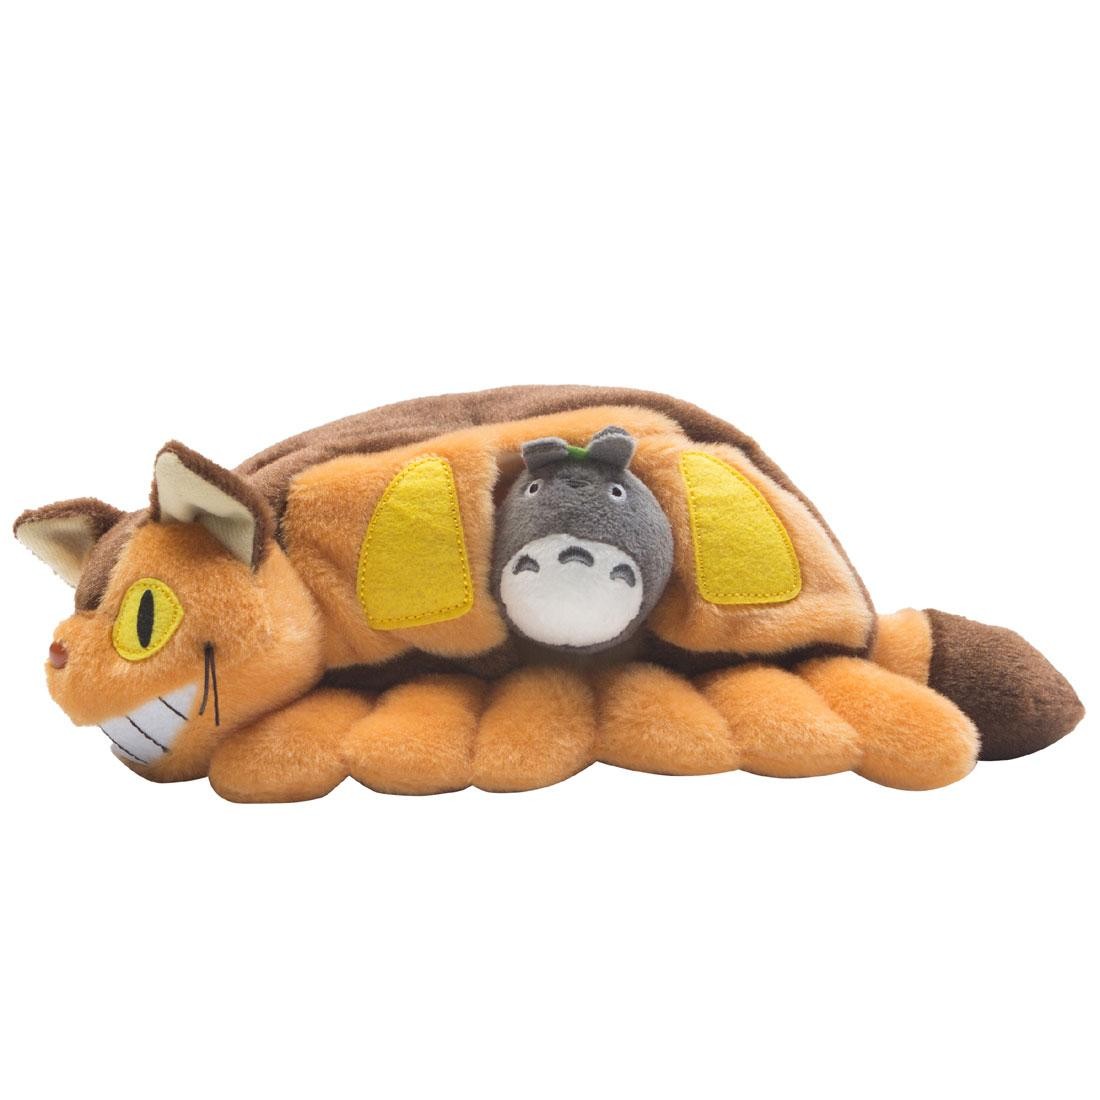 totoro stuffed animal